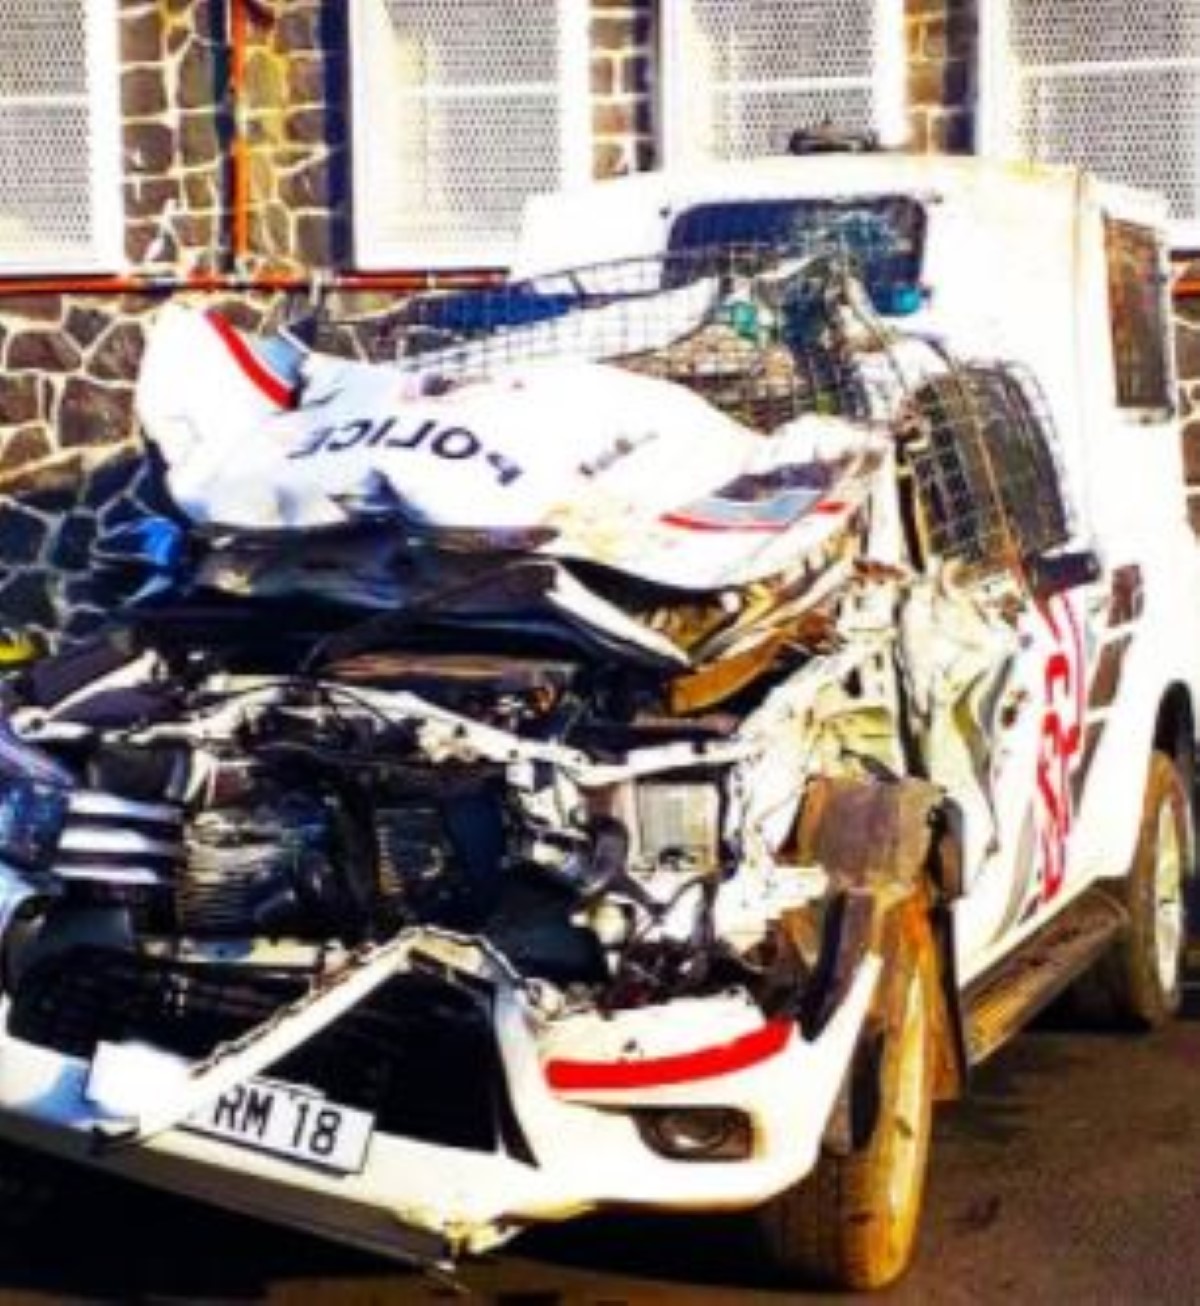 A Les Salines : Un véhicule de police percute un pylône, deux officiers blessés